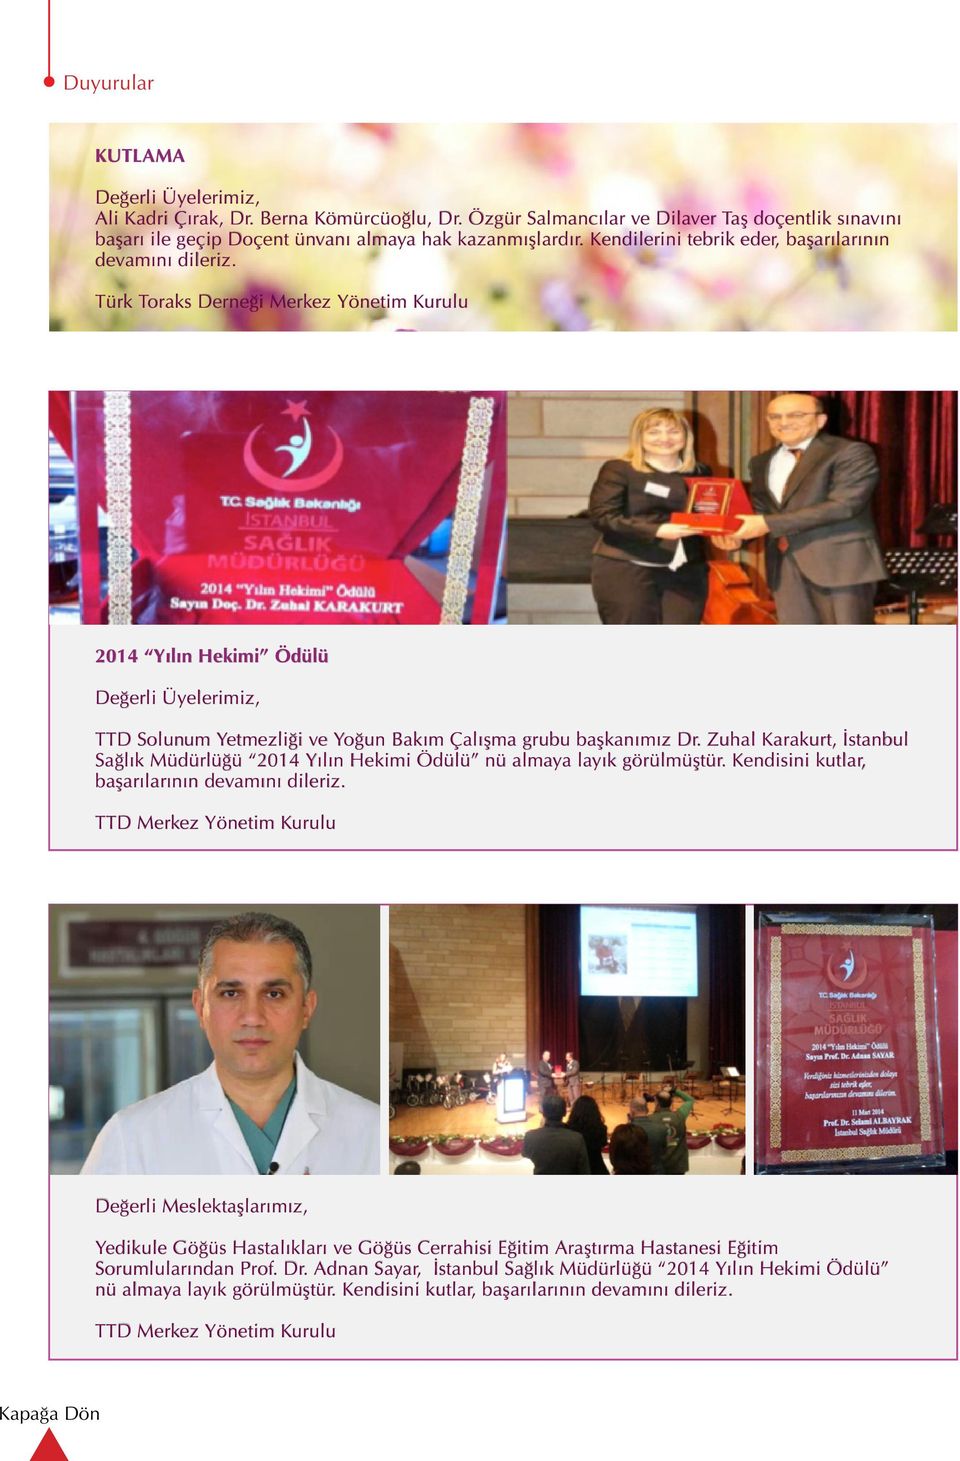 Zuhal Karakurt, İstanbul Sağlık Müdürlüğü 2014 Yılın Hekimi Ödülü nü almaya layık görülmüştür. Kendisini kutlar, başarılarının devamını dileriz.